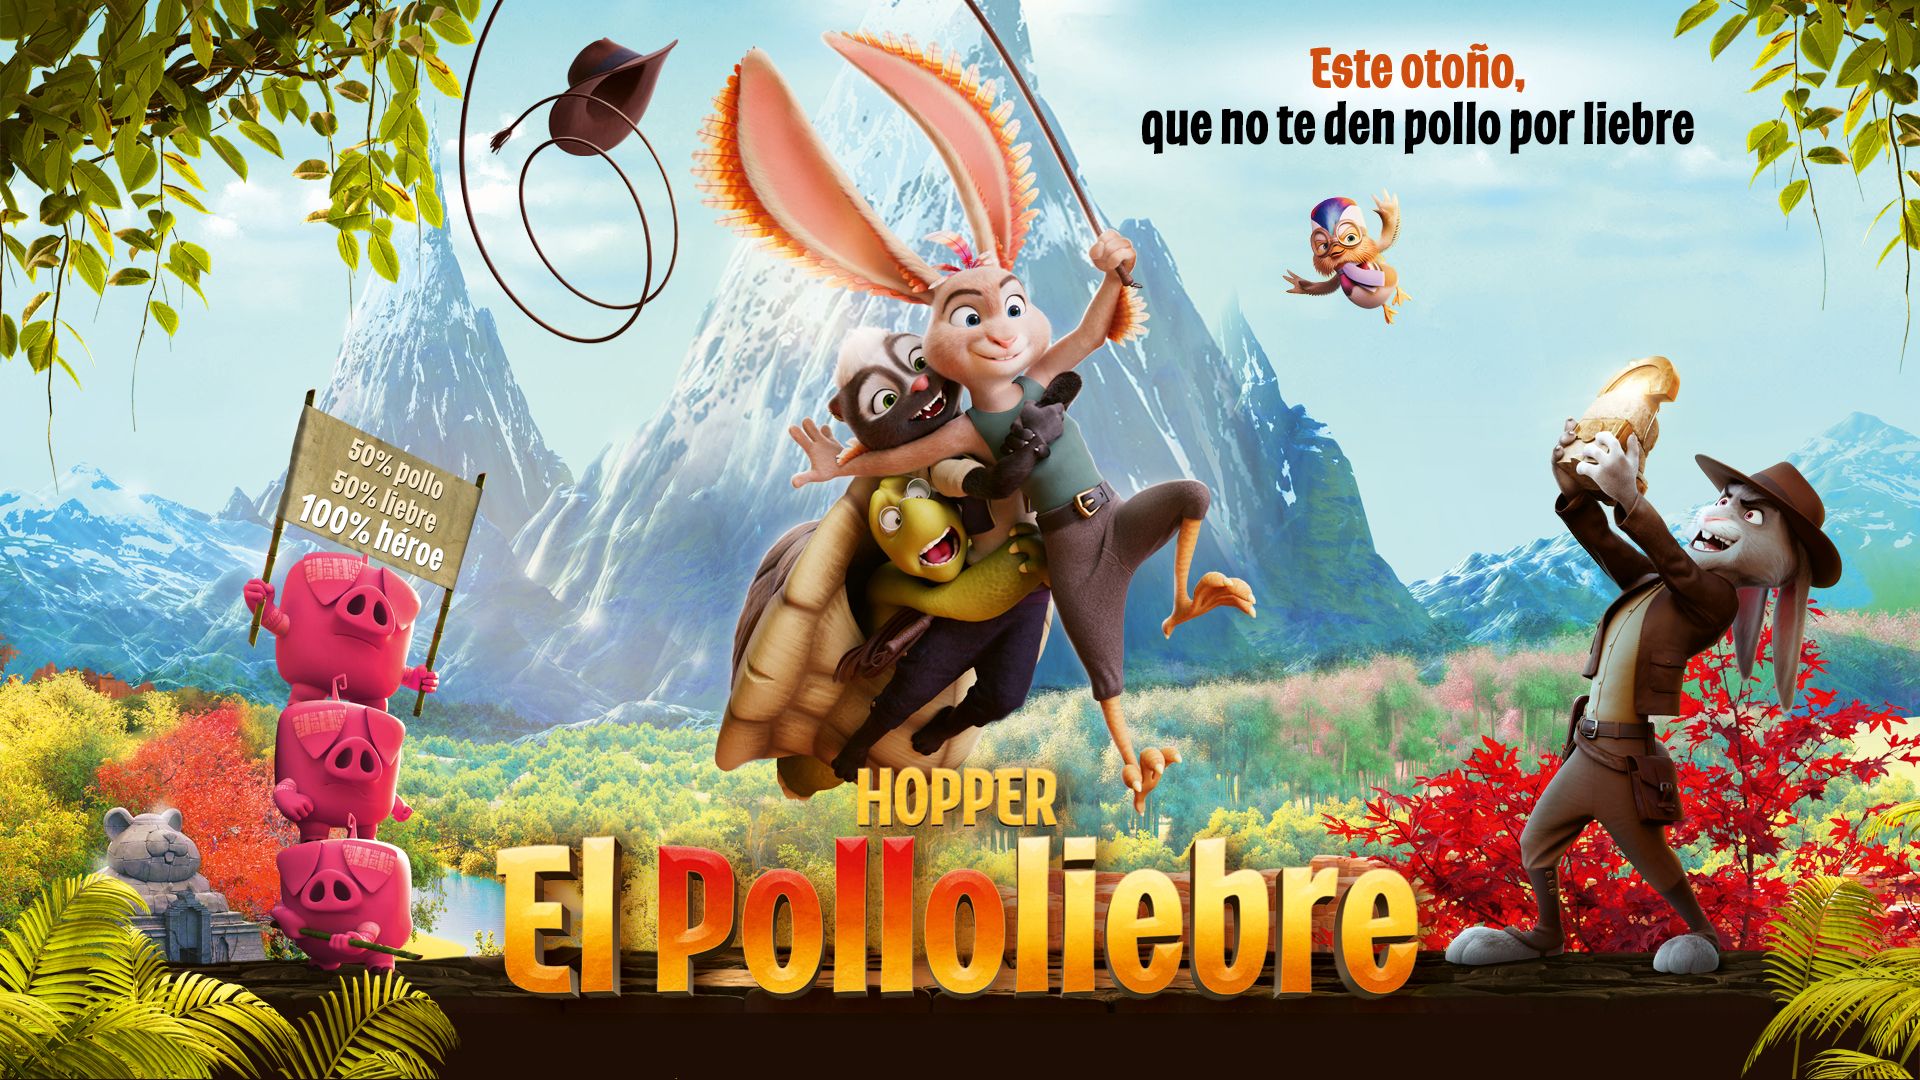 HOPPER, EL POLLOLIEBRE thumbnail